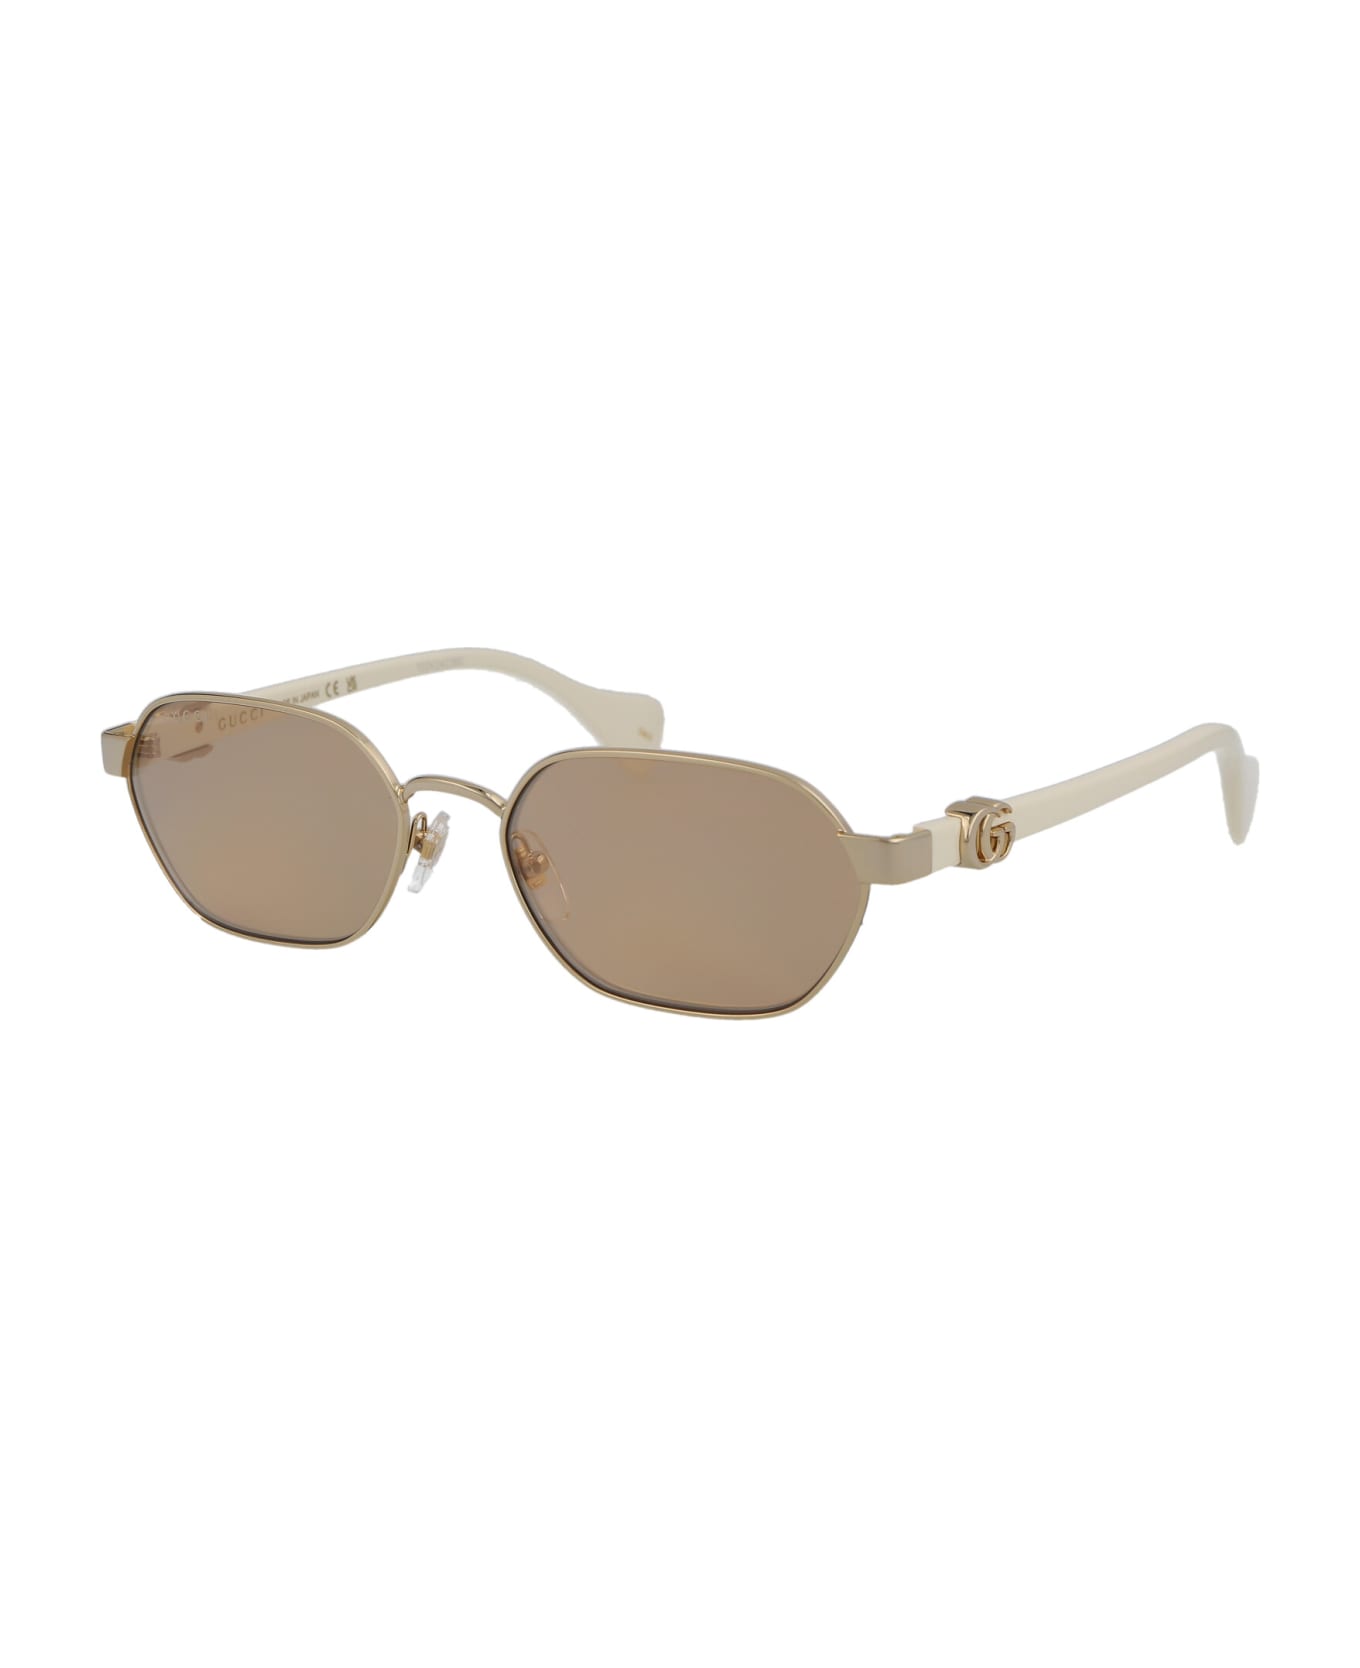 Gucci Eyewear Gg1593s Sunglasses - 002 GOLD IVORY PINK